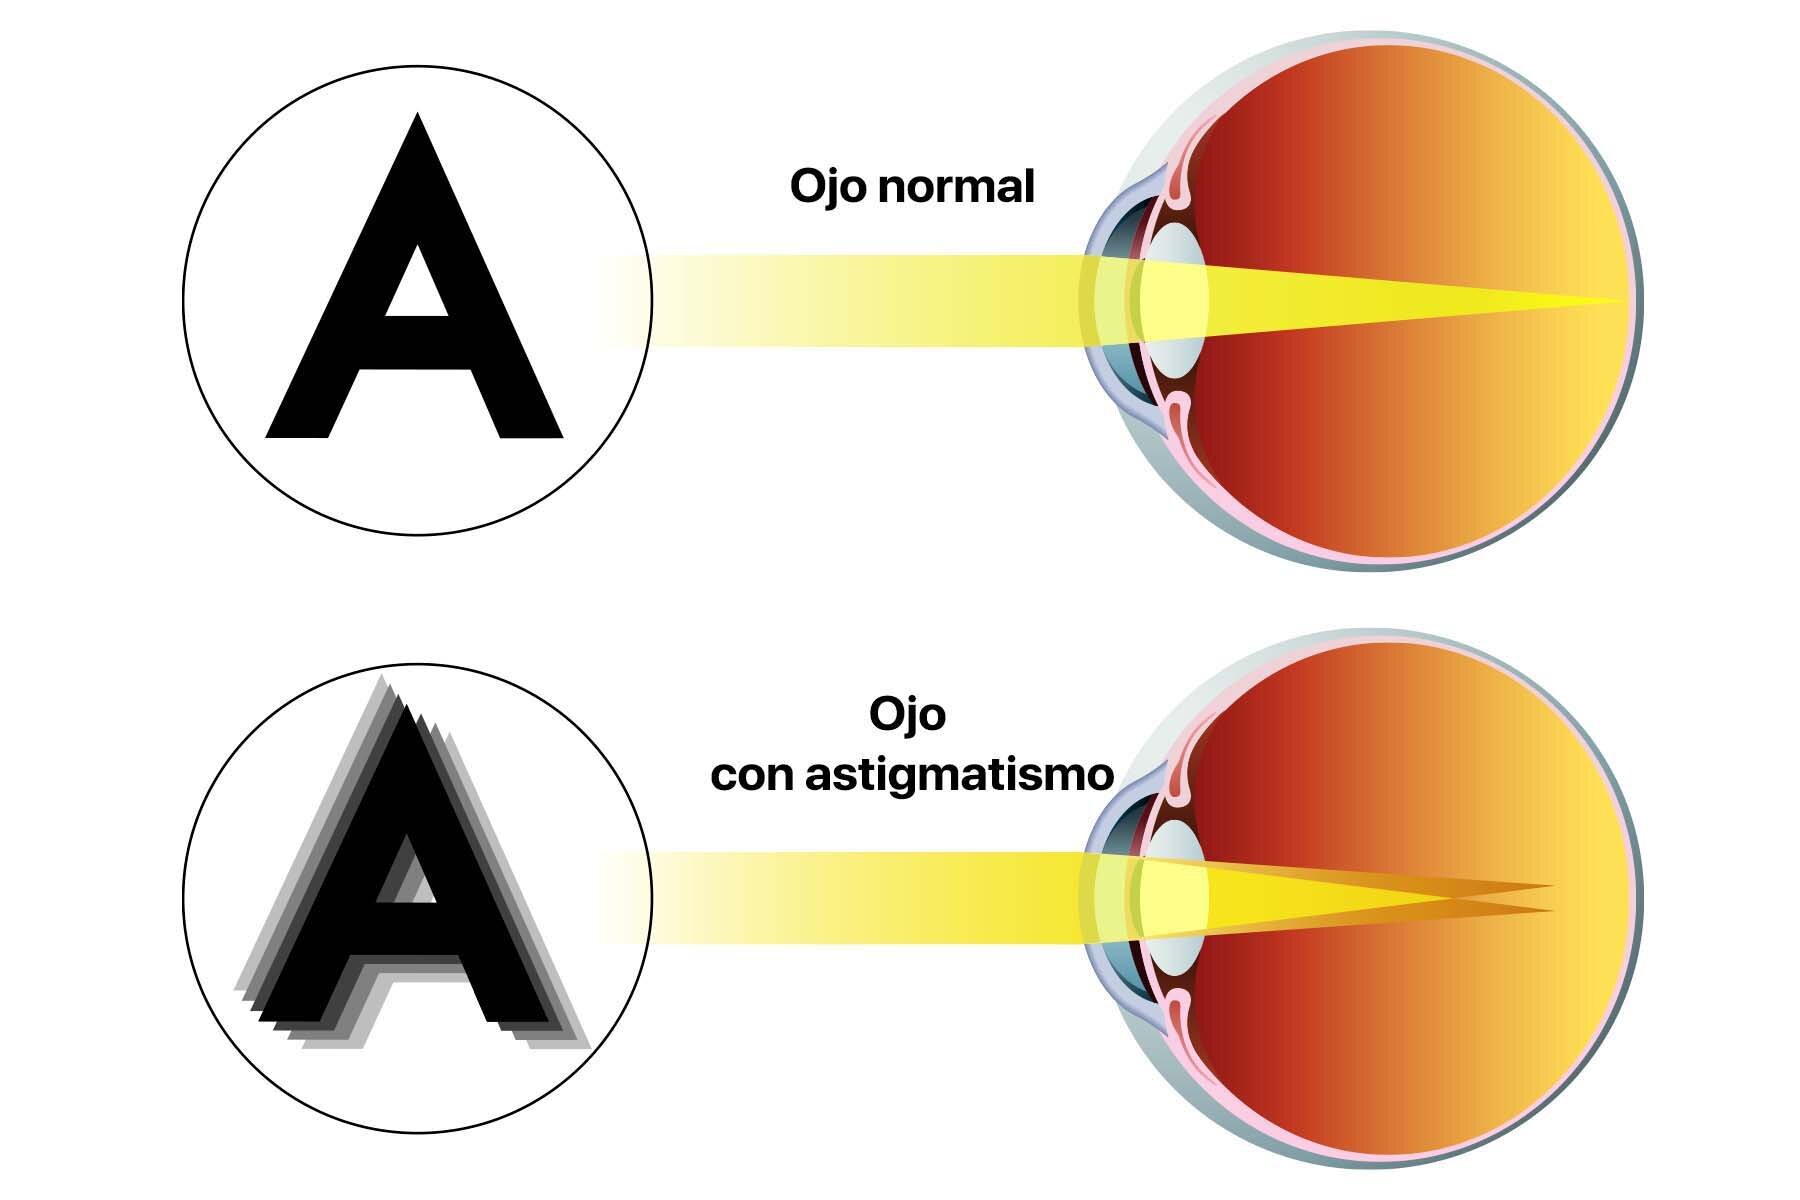 Gráfico en el que vemos la letra A desde la visión de un ojo con astigmatismo y desde otro que no lo tiene. La idea es comparar las diferencias visuales que existen entre uno y otro.